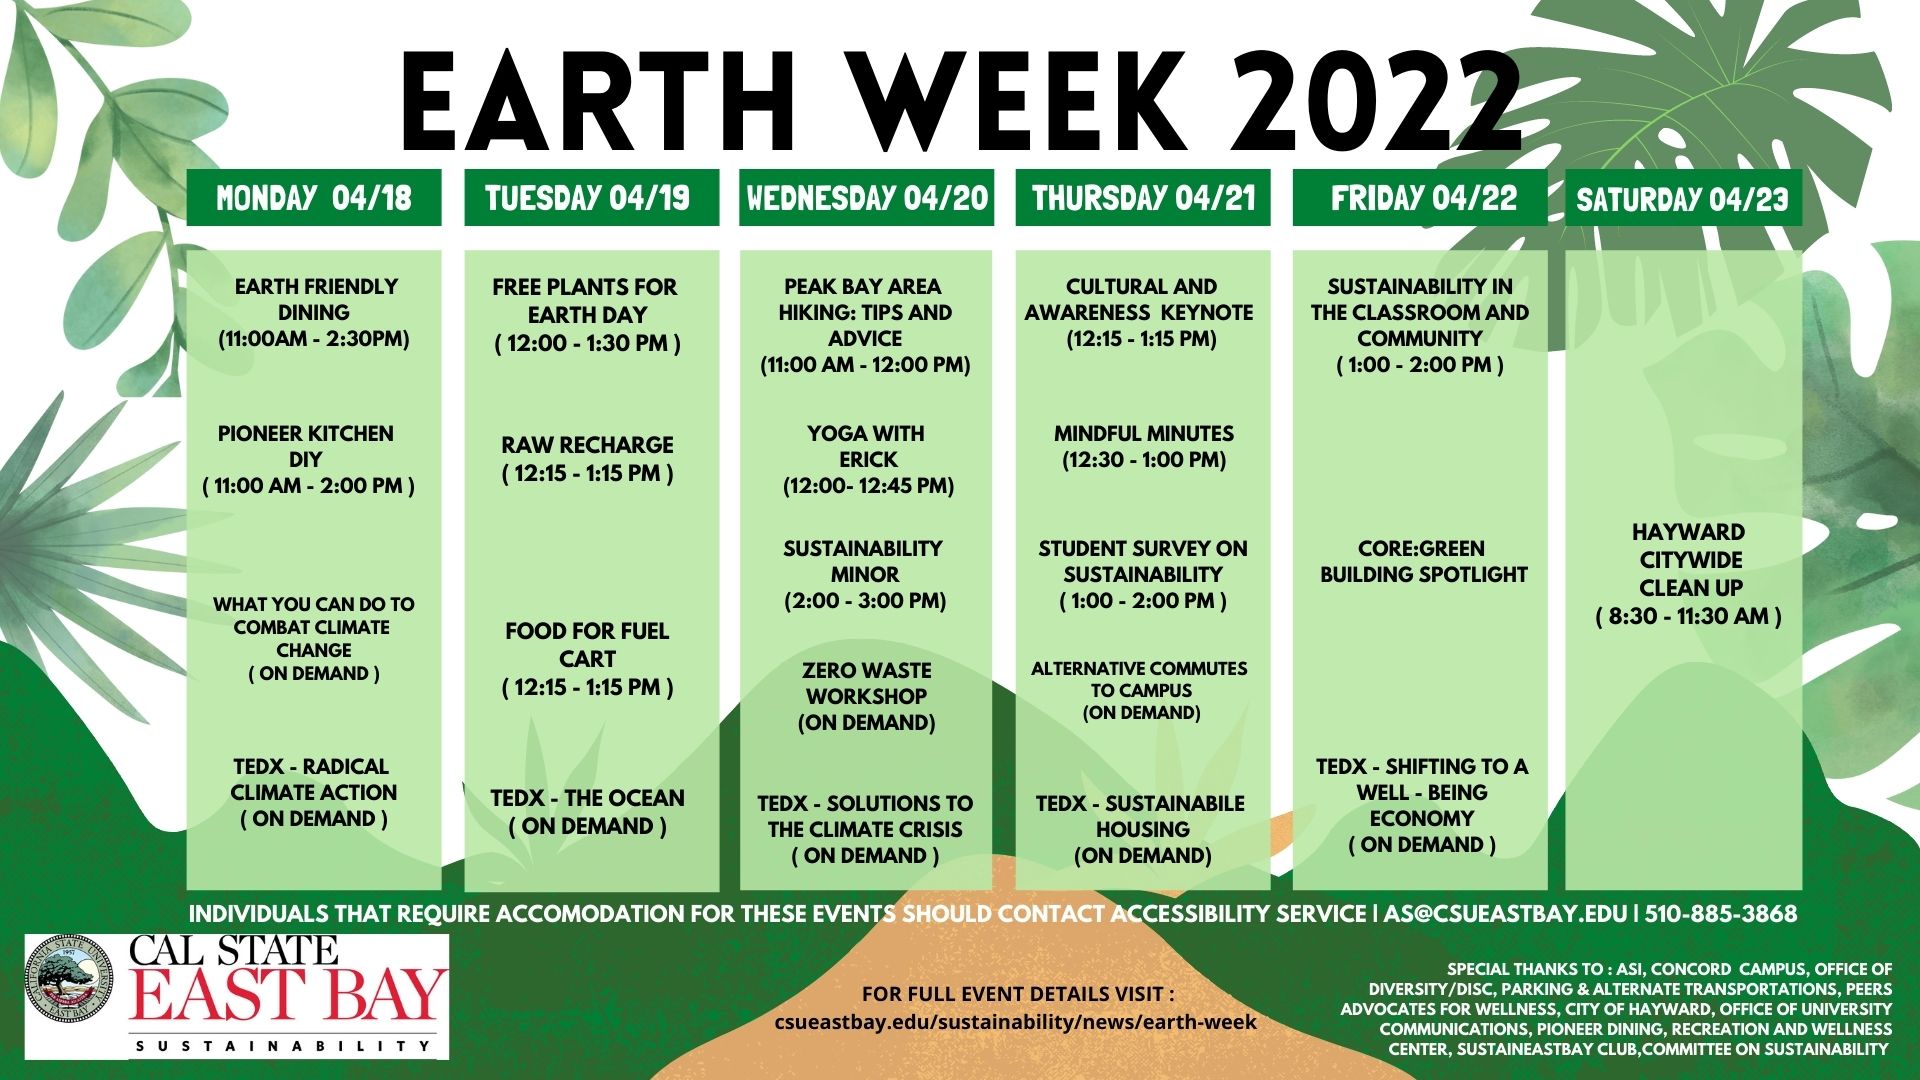 Earth Week Calendar, daily event descriptions below